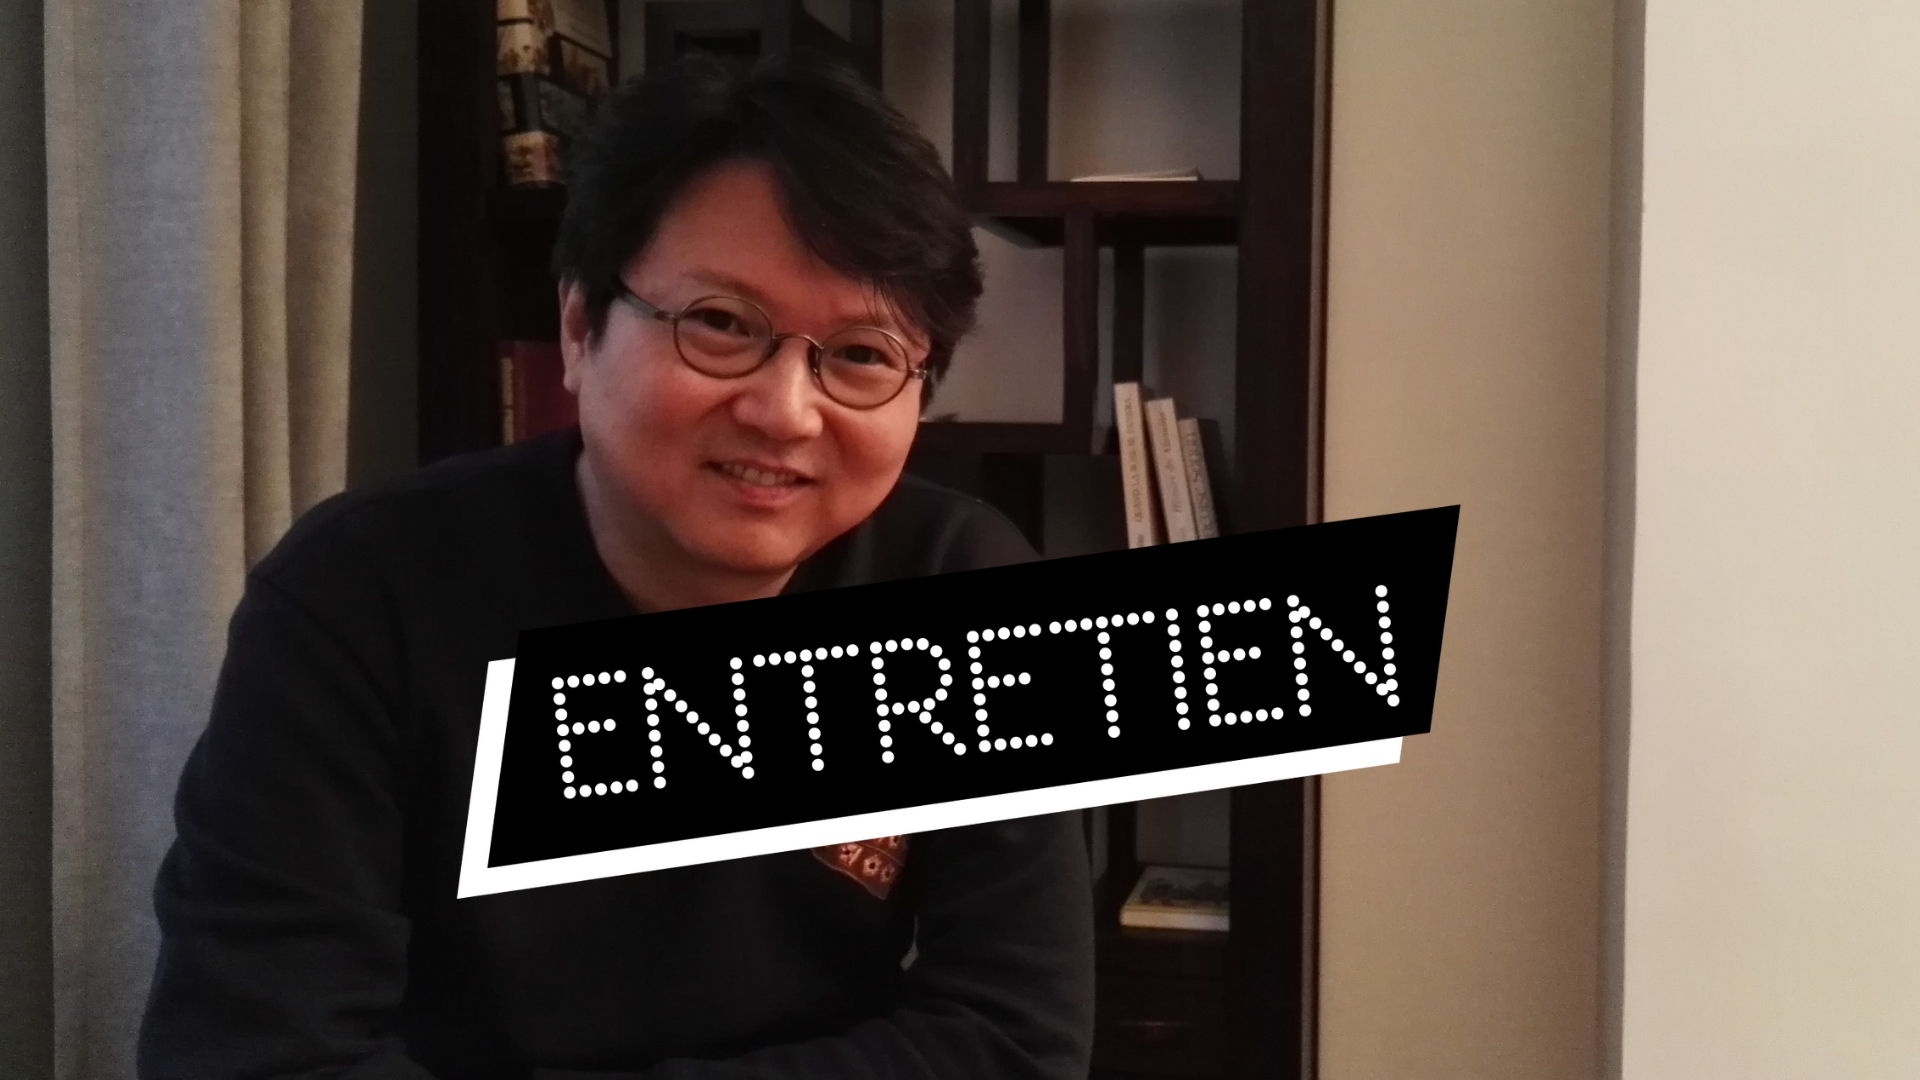 Entretien avec le réalisateur de The Great Battle, Kim Kwang-sik